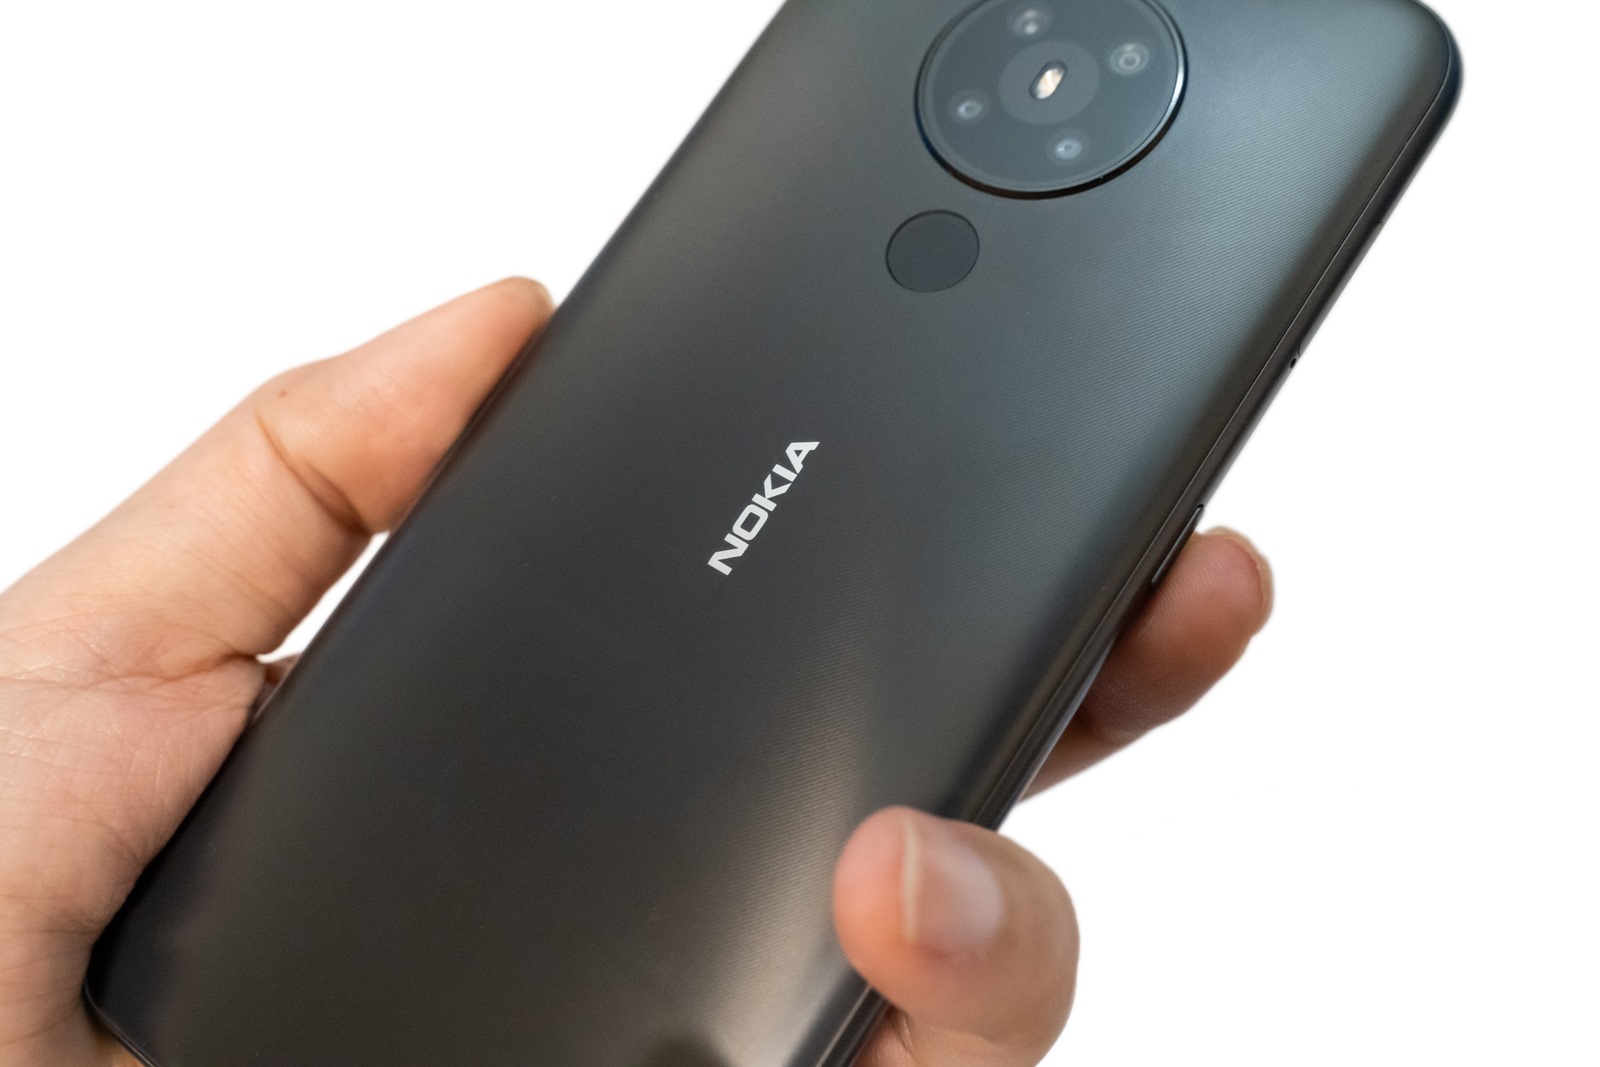 Nokia 5.3 新機實測 (2) 性能測試 / 電力續航 / 遊戲實測 / 相機實拍分享 @3C 達人廖阿輝